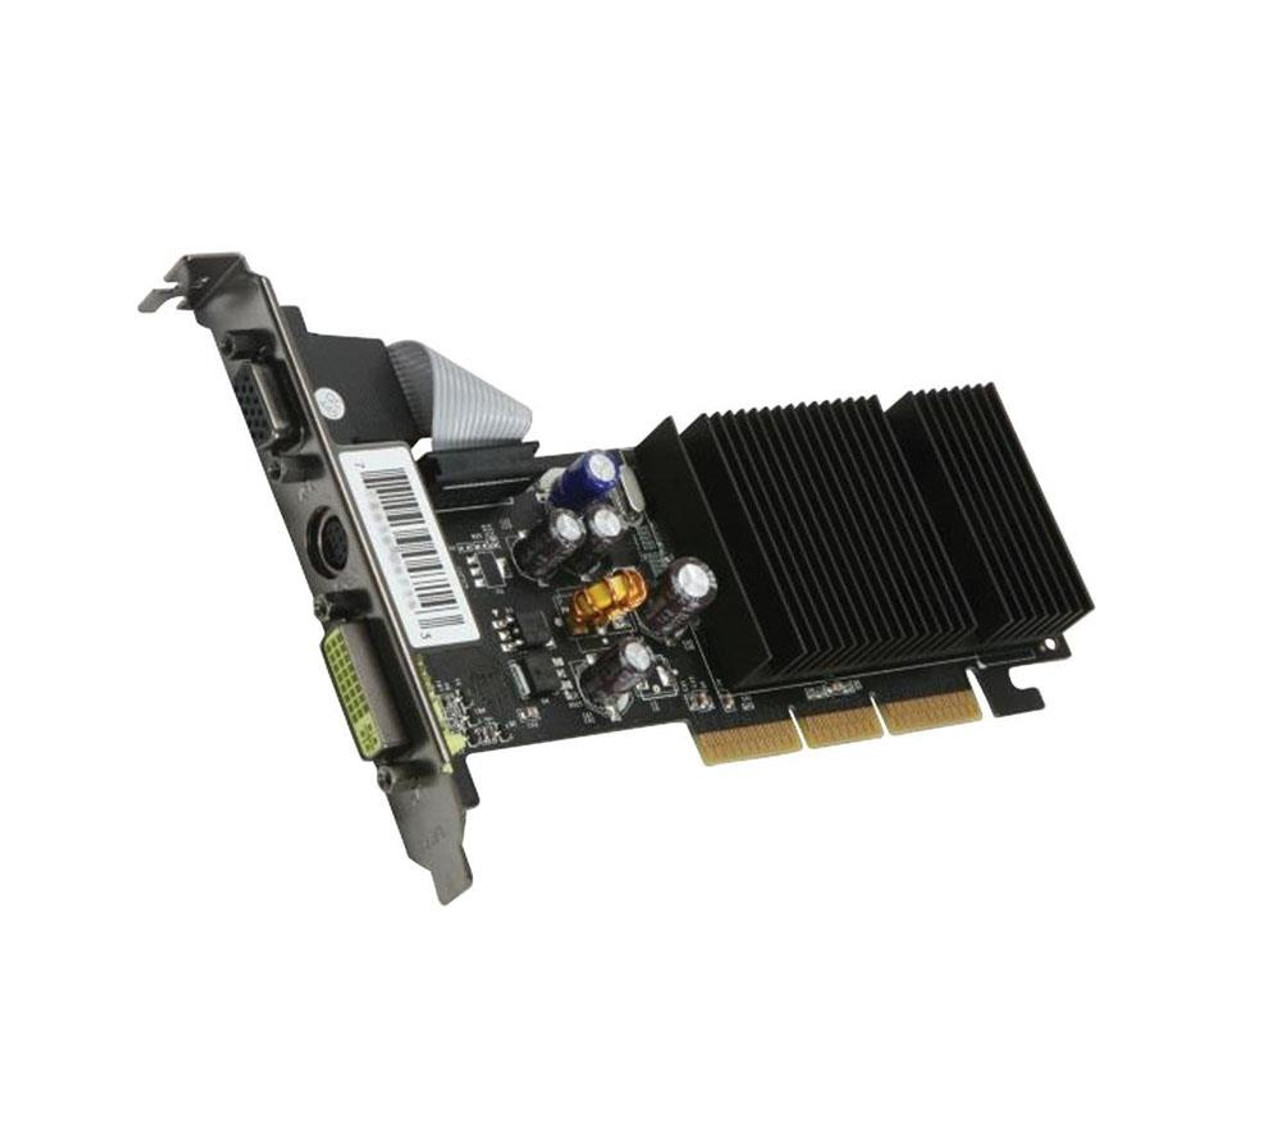 PV-T44A-YANG XFX GeForce 6200 512MB 